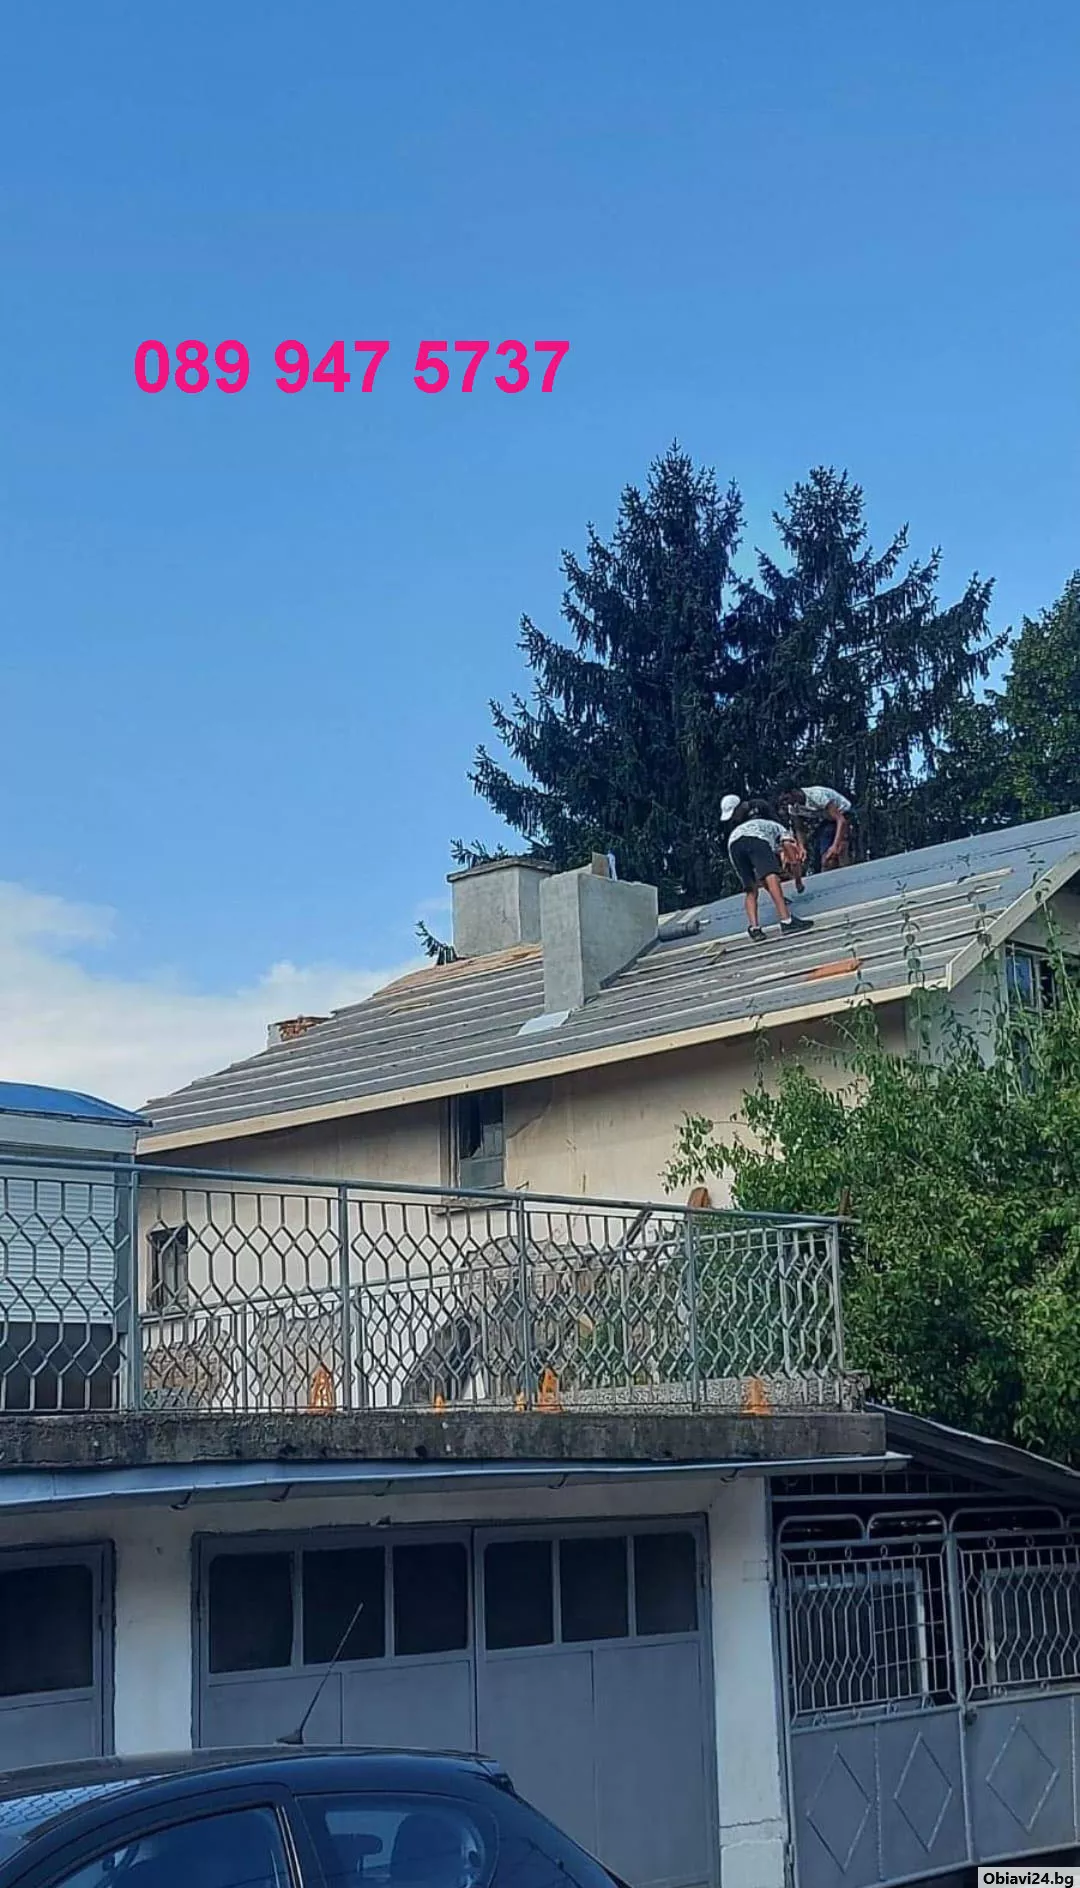 Качествен ремонт на покриви - 20% отстъпка - obiavi24.bg